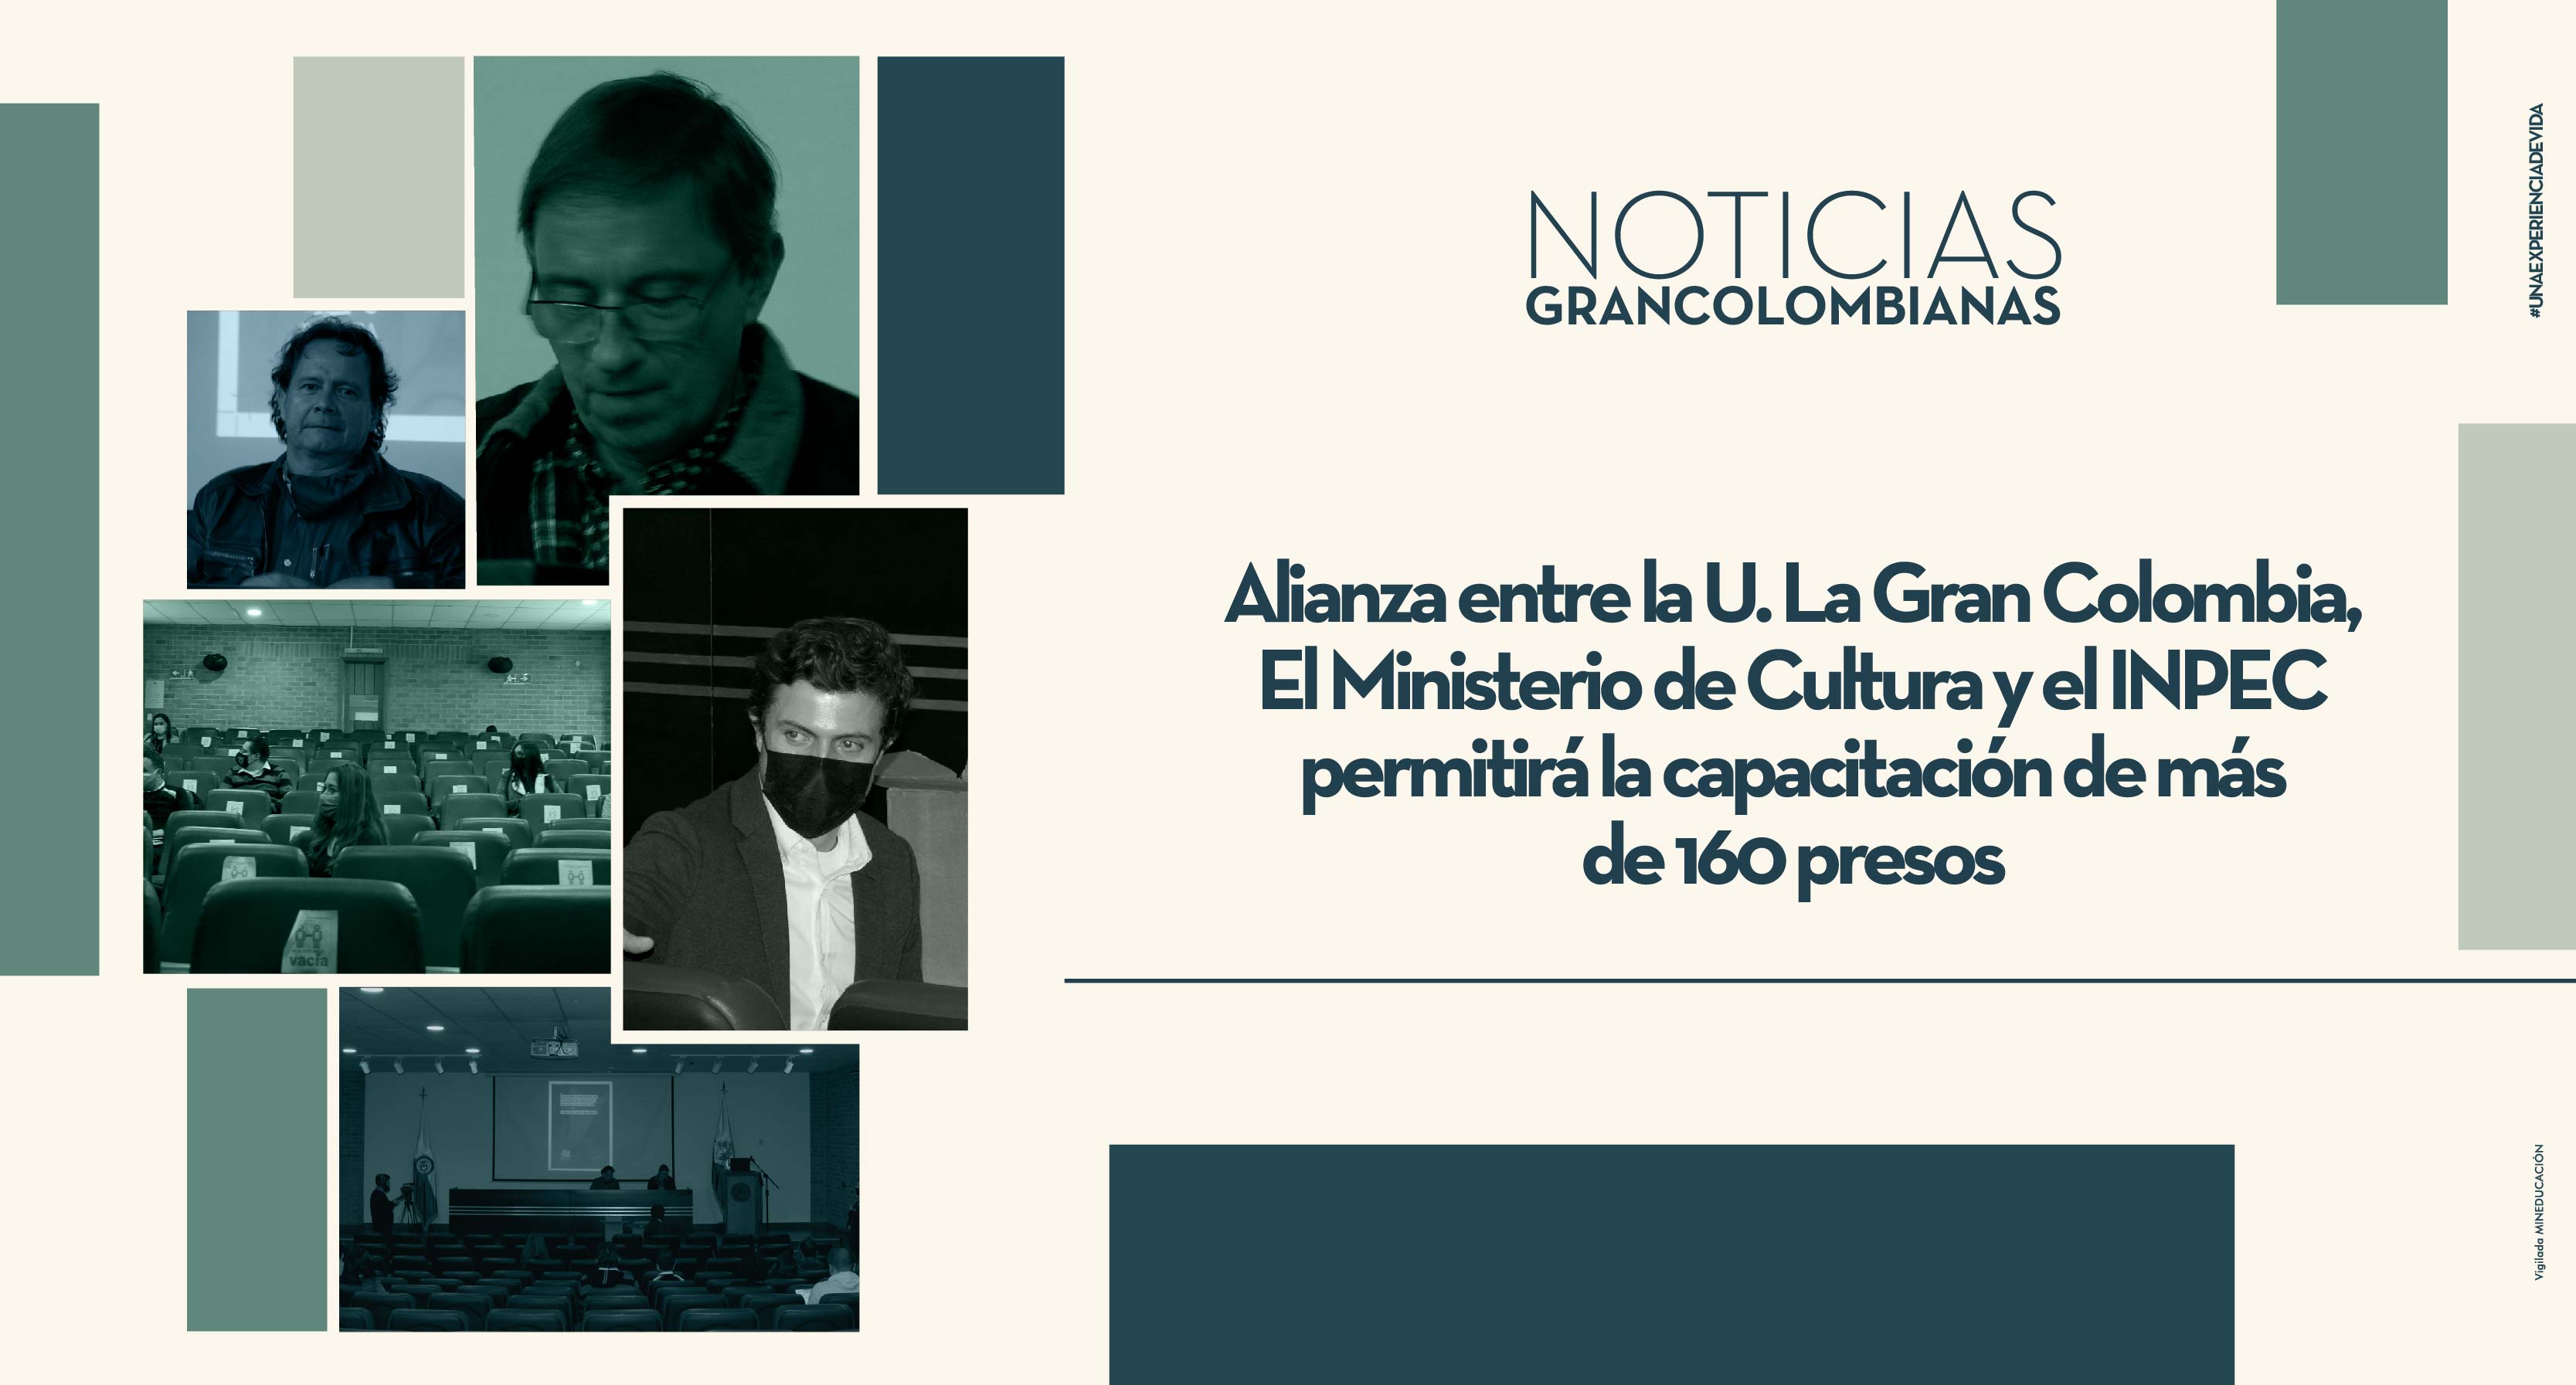 Alianza entre la U. La Gran Colombia, El Ministerio de Cultura y el INPEC permitirá la capacitación de más de 160 presos